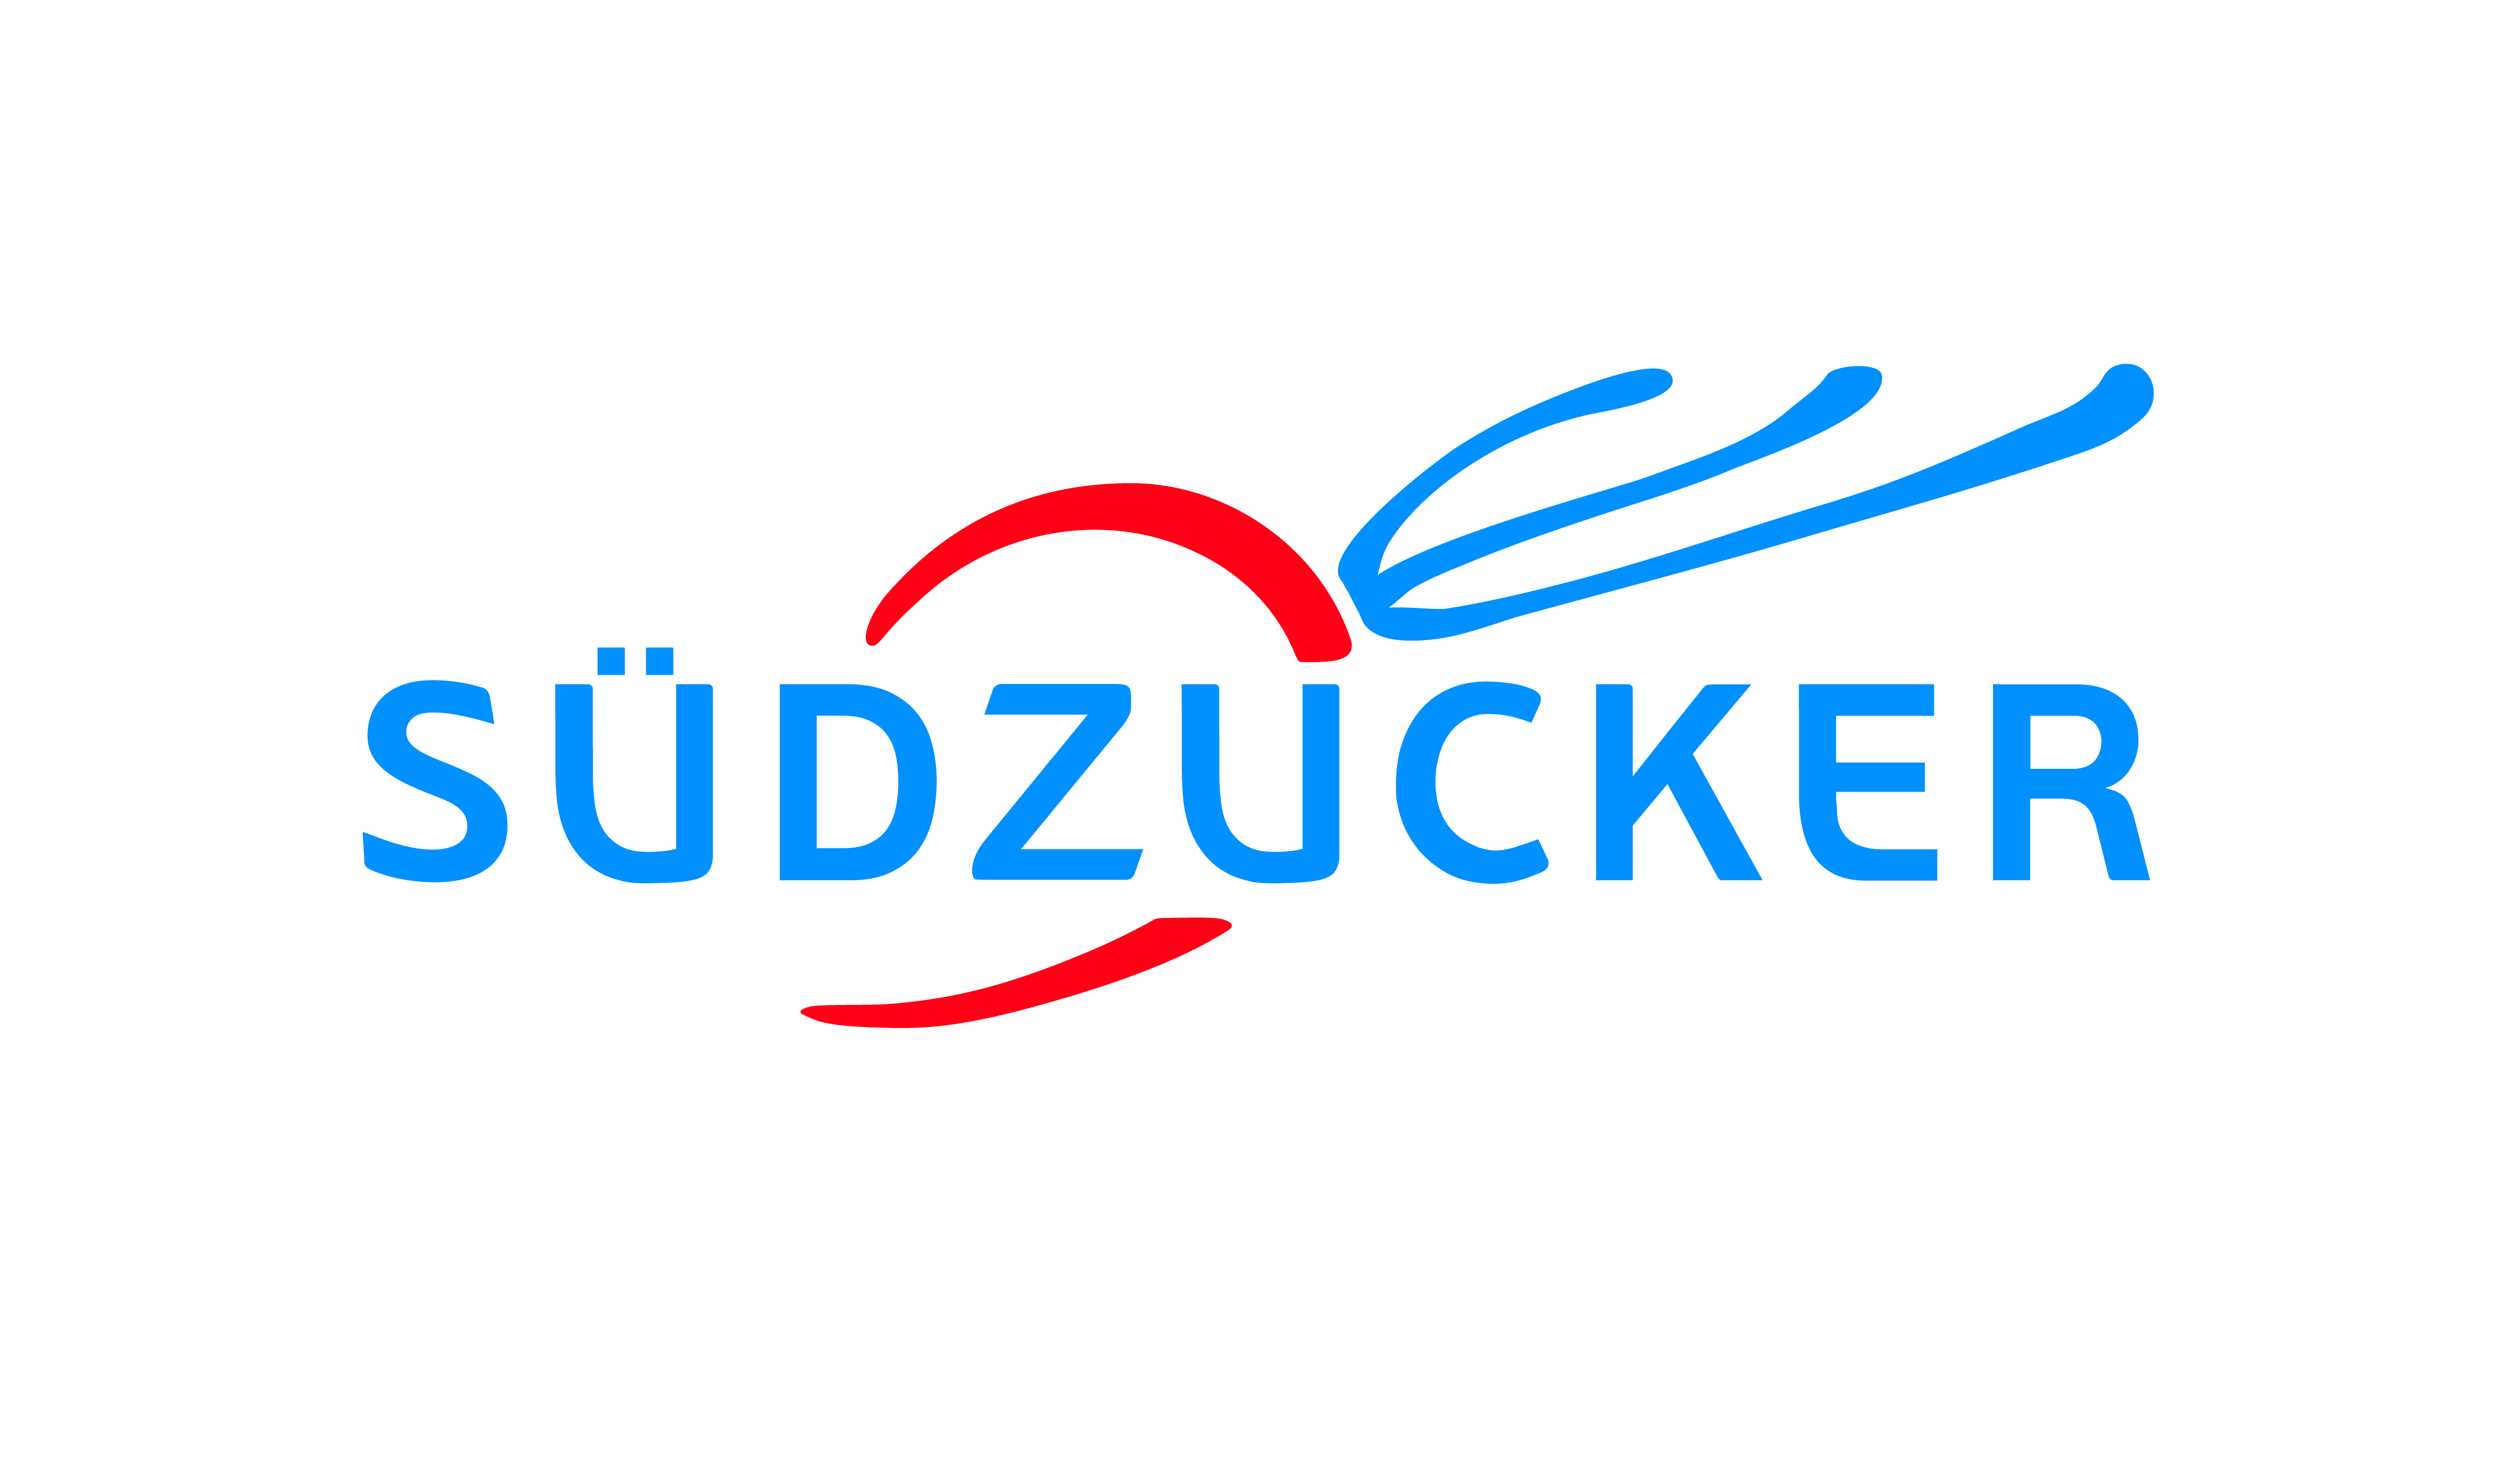 Sdzucker-Konzern